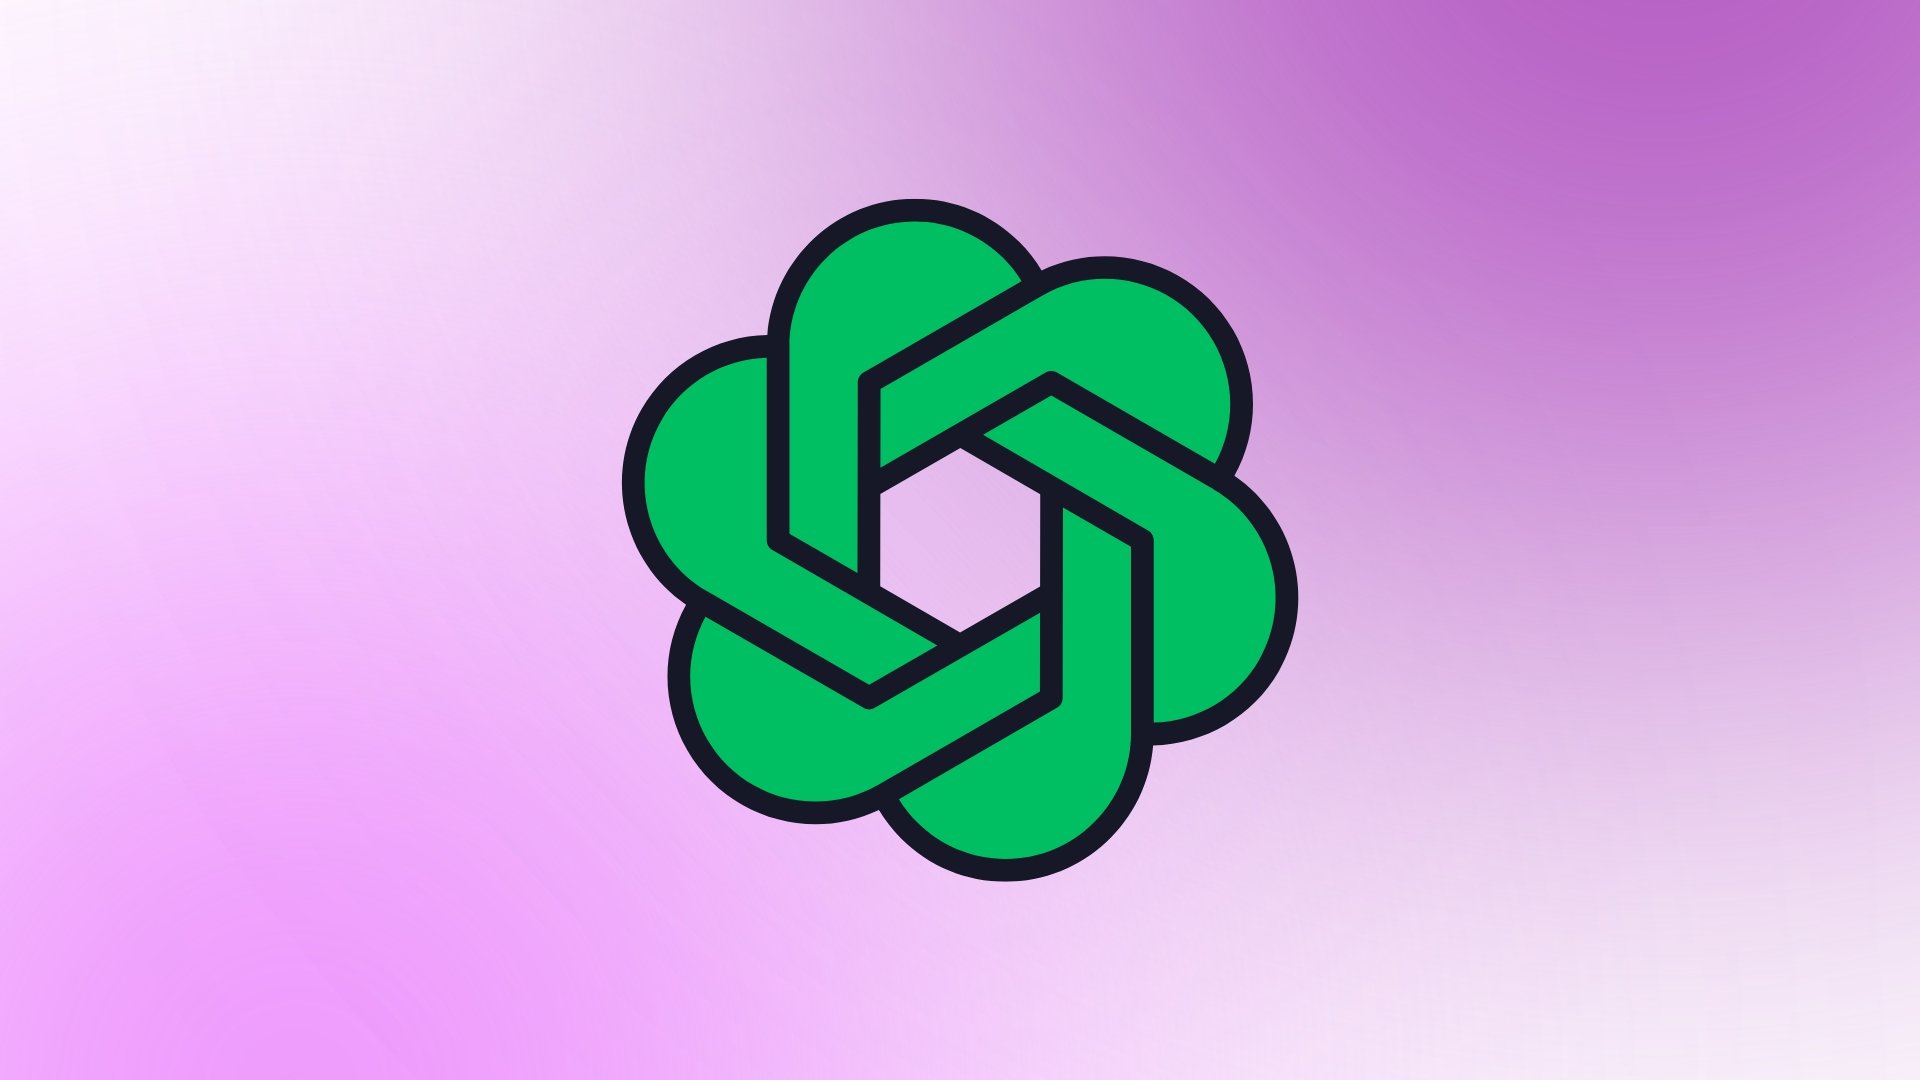 Logo do ChatGPT